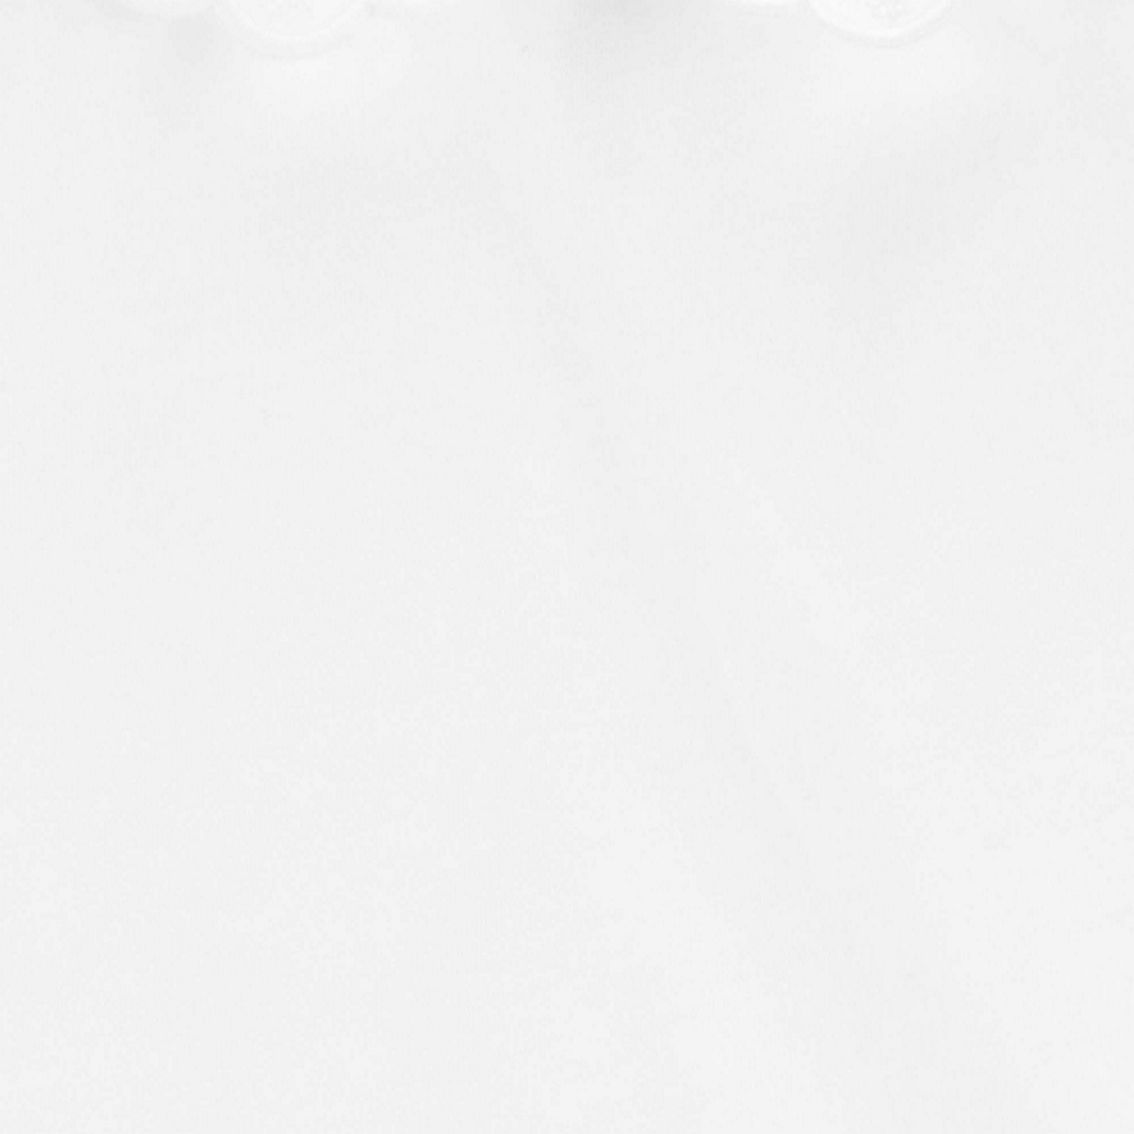 OshKosh B'gosh Toddler Girls White Scalloped Peter Pan Collar Jersey Tee - Image 2 of 2